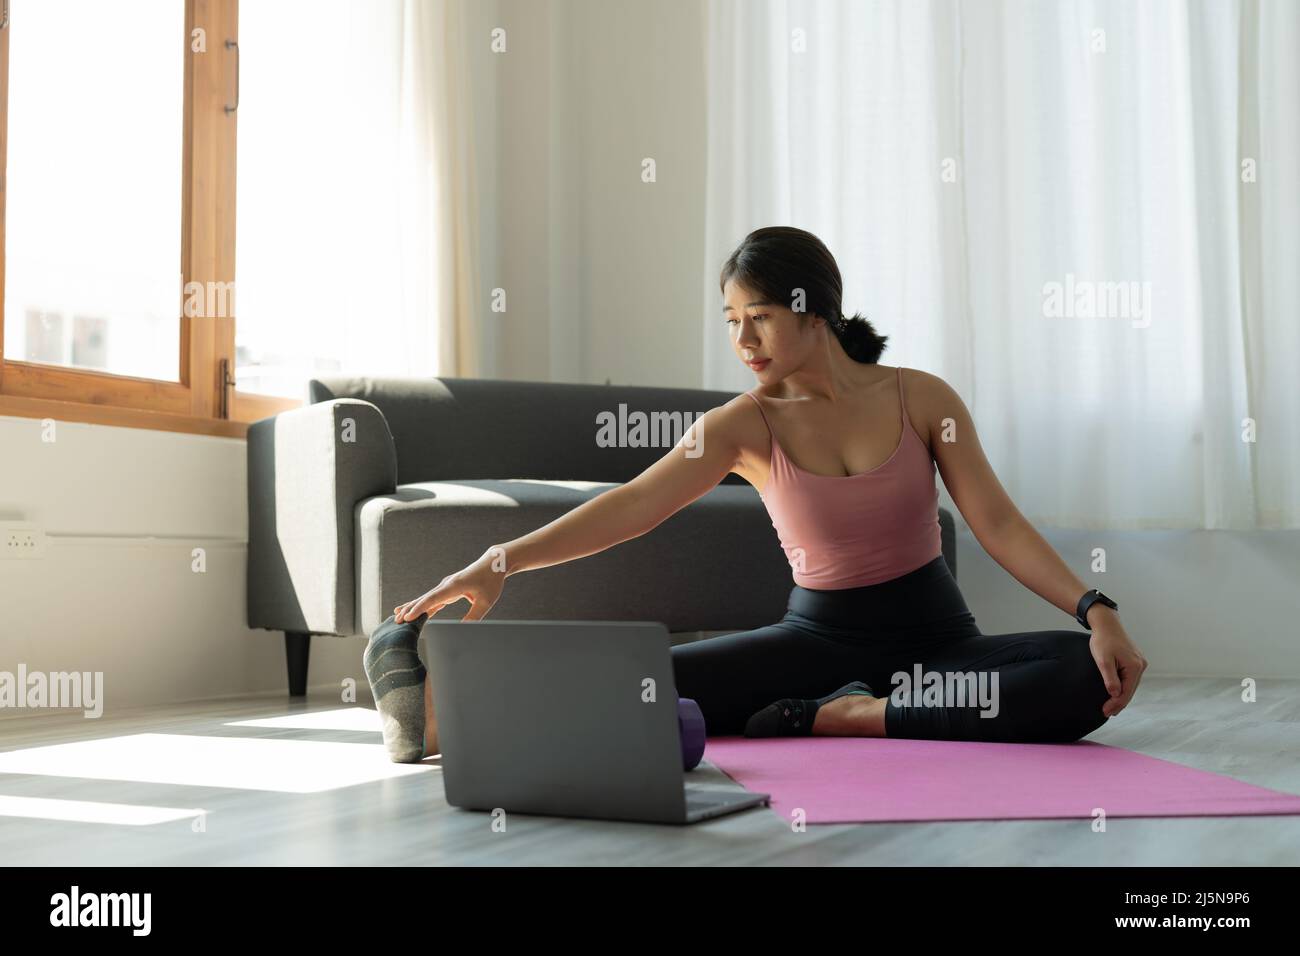 Die junge Frau trainiert zu Hause Yoga. Fitness, Training, gesundes Leben und Diät-Konzept Stockfoto